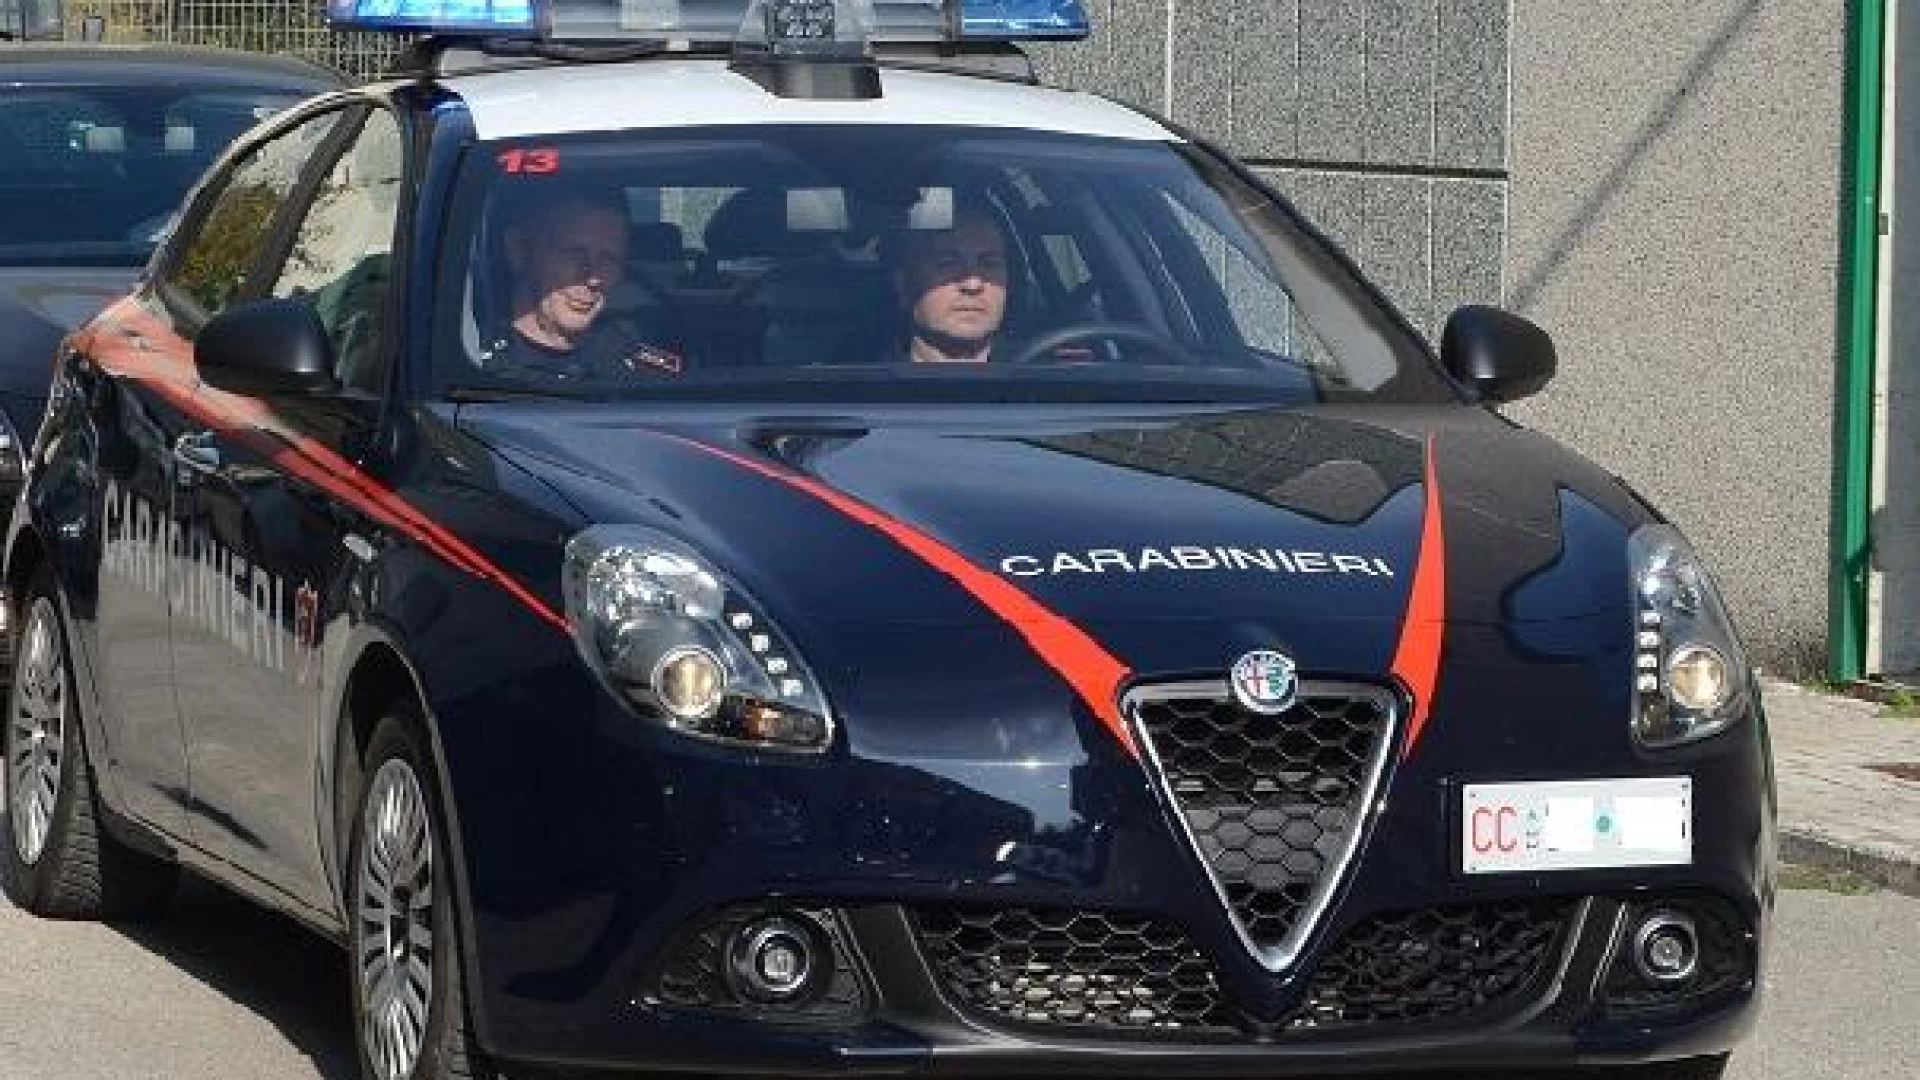 Cantalupo nel Sannio: I Carabinieri scoprono un dipendente di un’azienda sfruttato dal datore di lavoro.